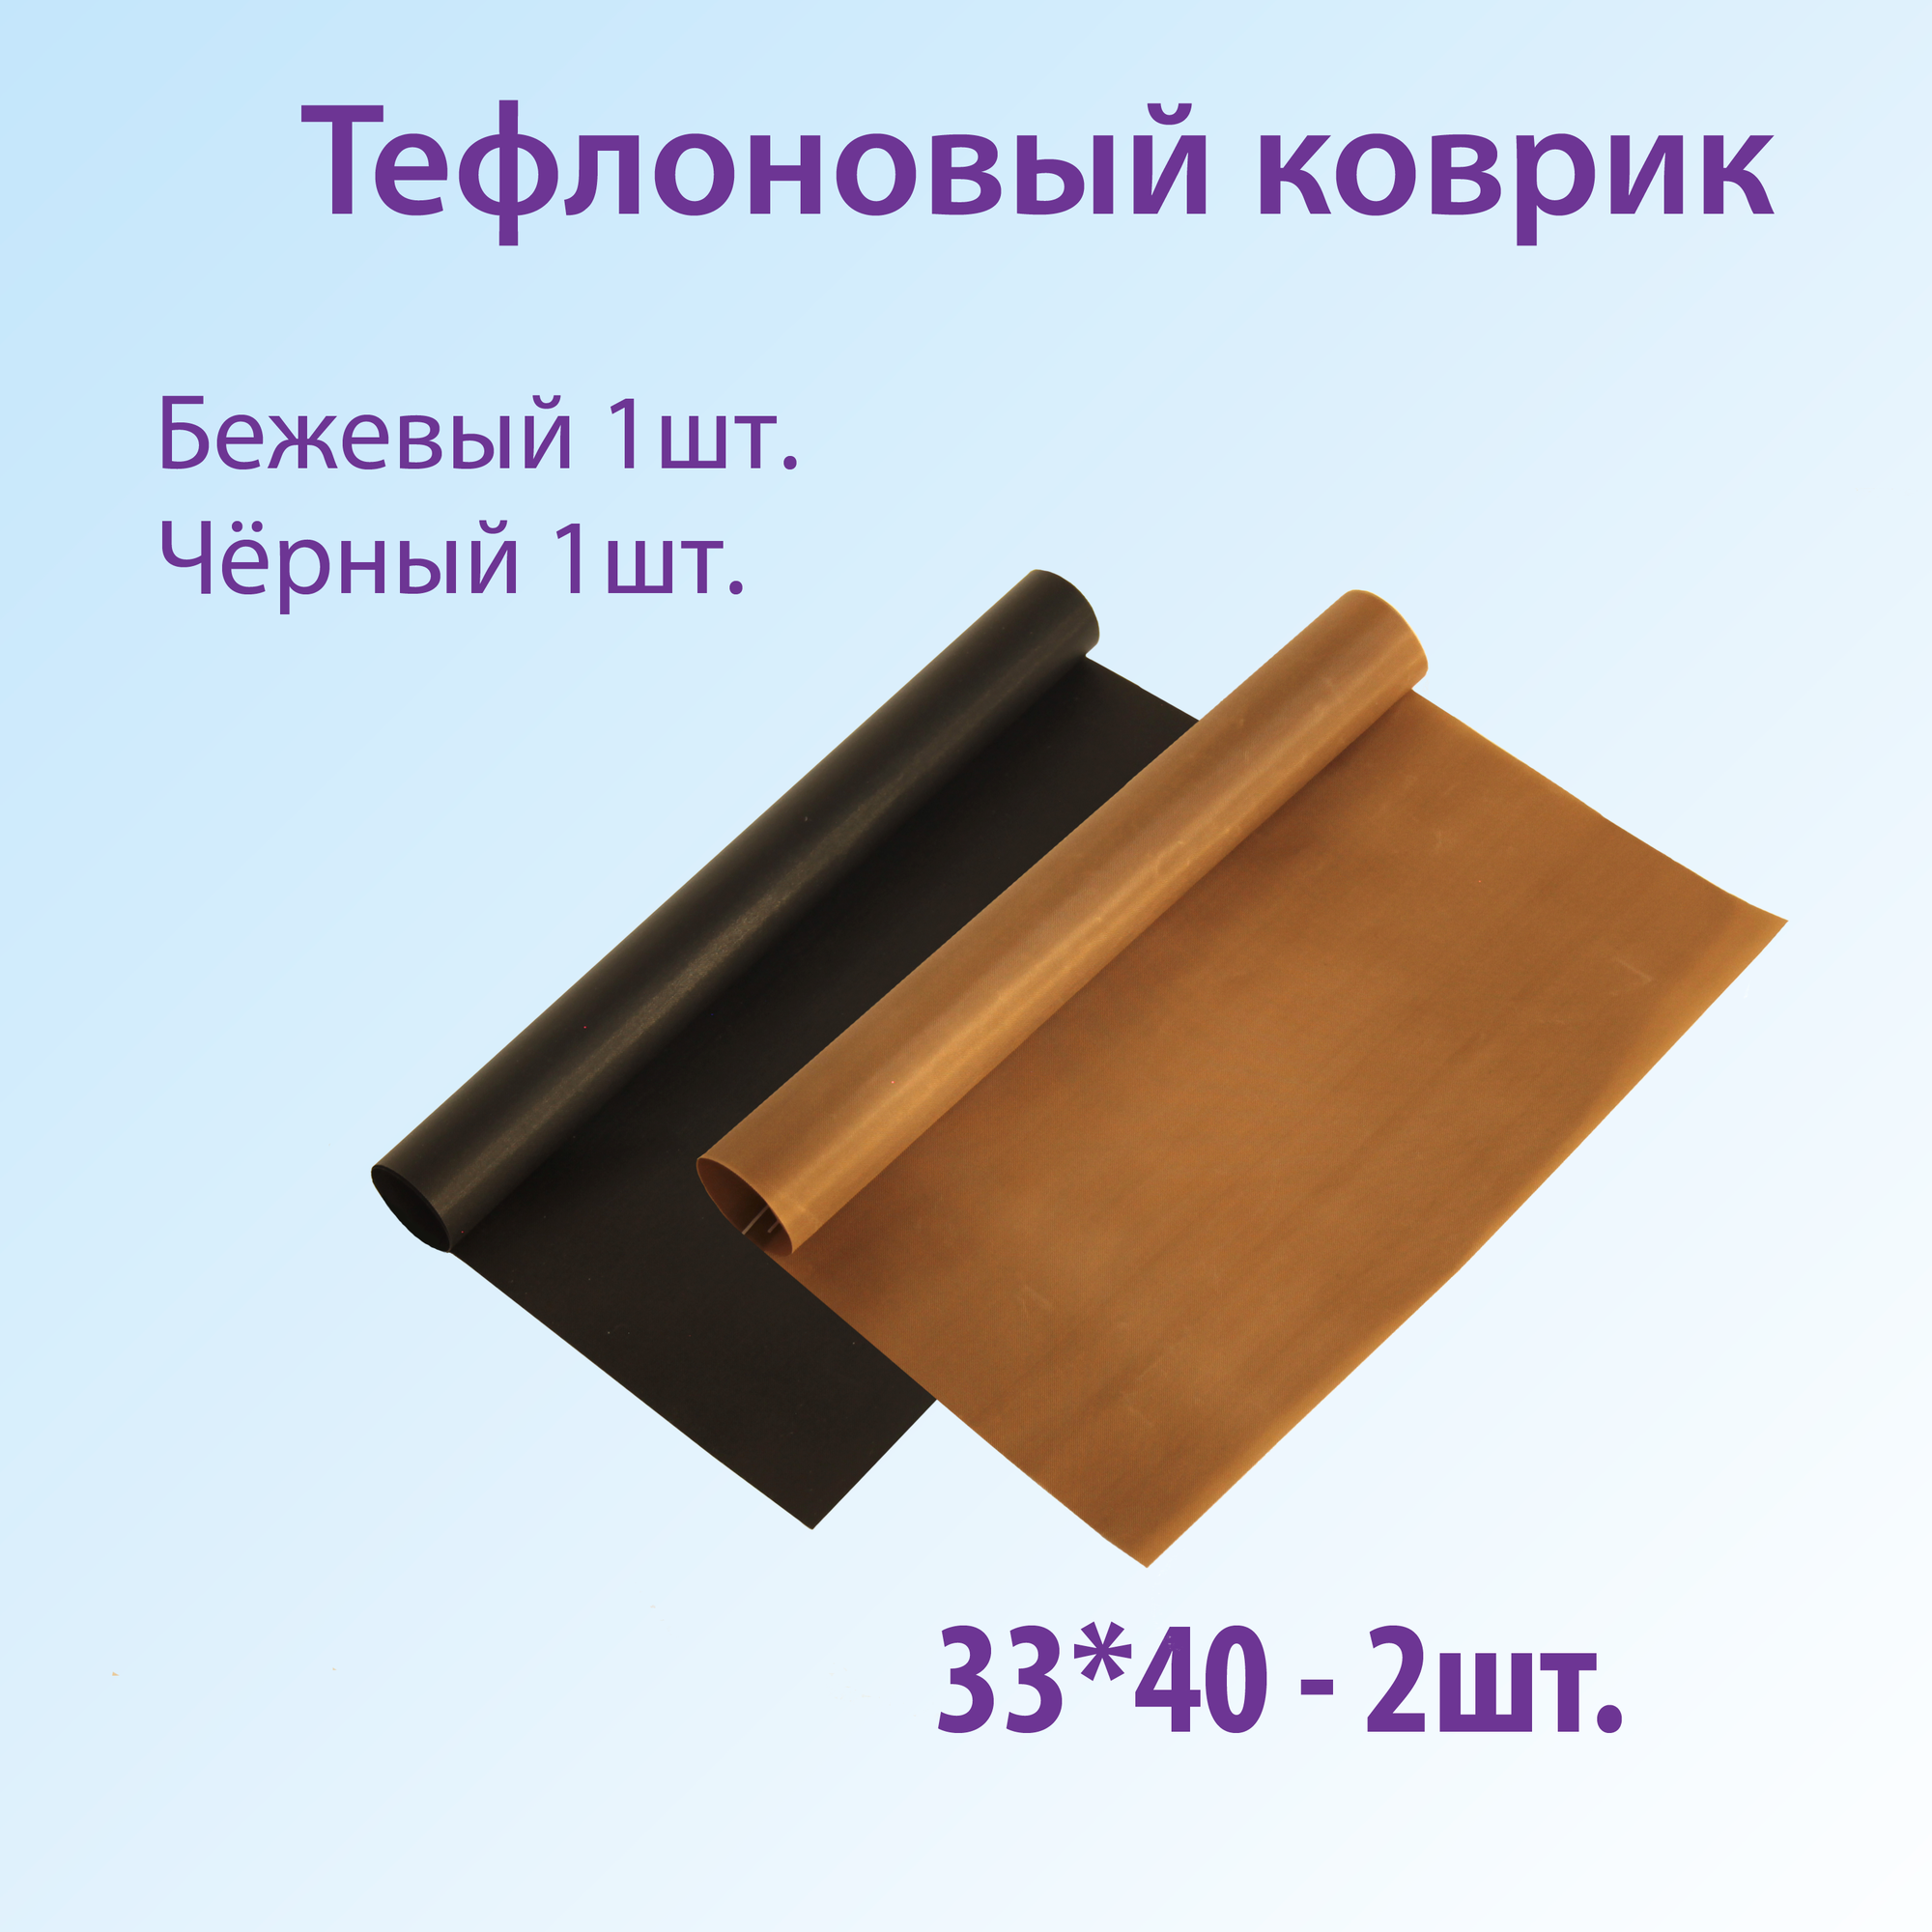 Тефлоновый коврик для выпечки FAVZIJA - 2шт. Антипригарный многоразовый коврик для выпечки бежевый и чëрный размер 33х40см